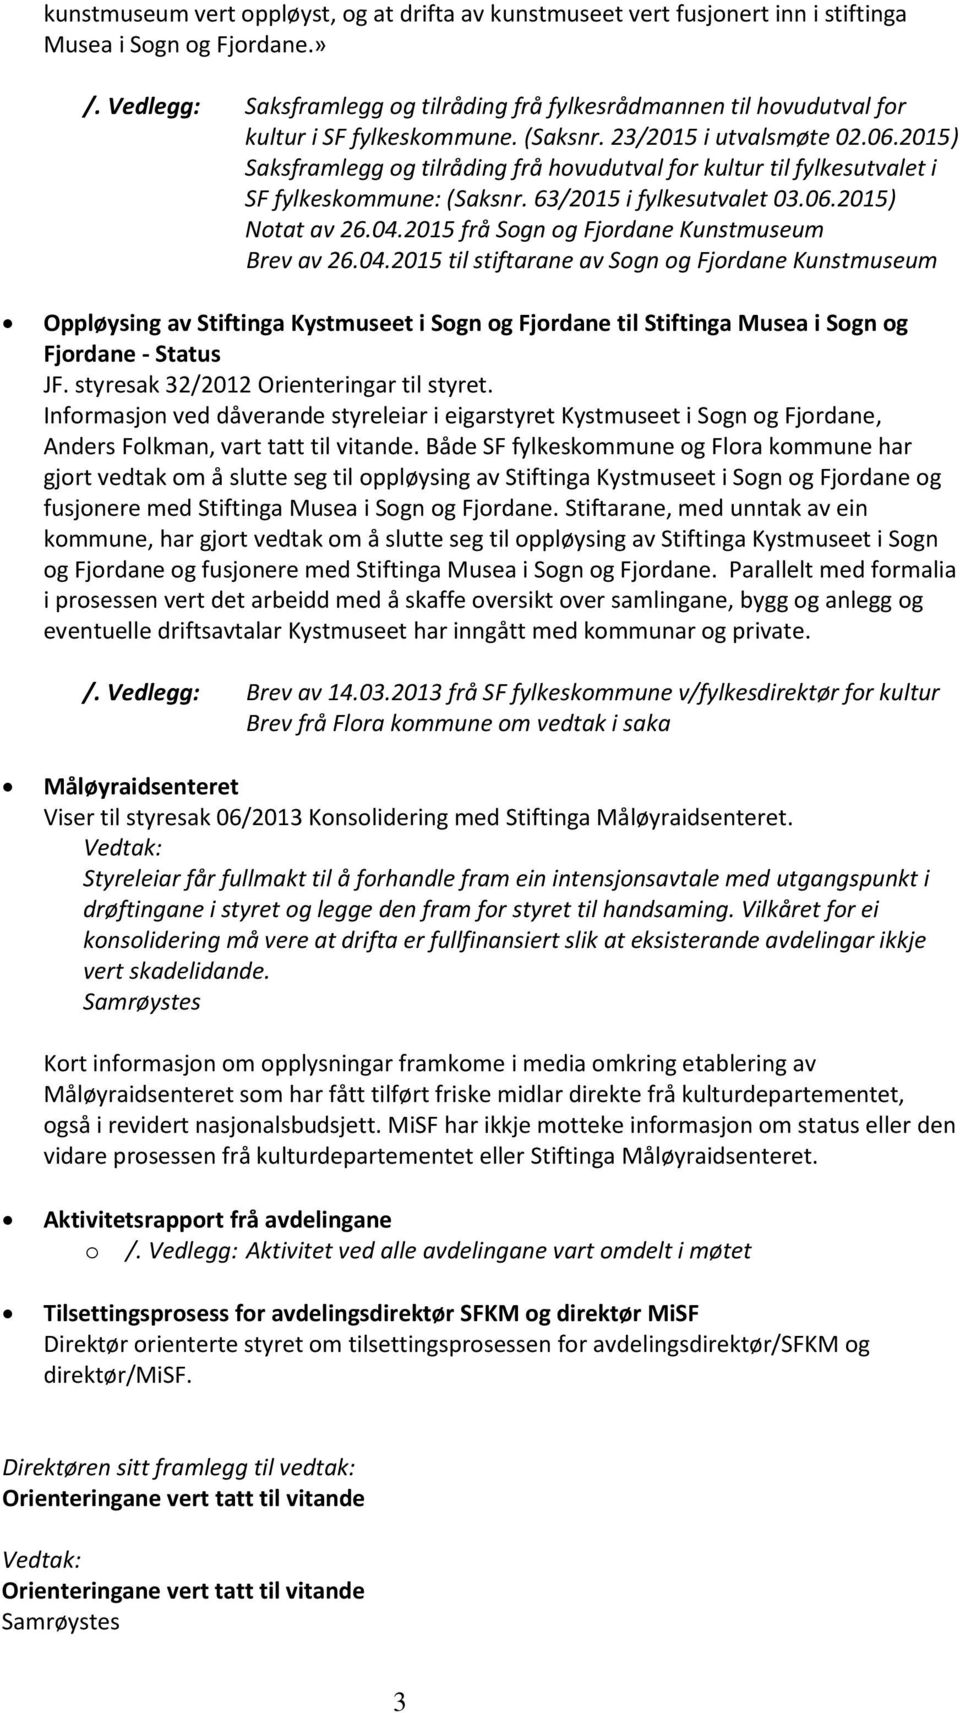 2015) Saksframlegg og tilråding frå hovudutval for kultur til fylkesutvalet i SF fylkeskommune: (Saksnr. 63/2015 i fylkesutvalet 03.06.2015) Notat av 26.04.